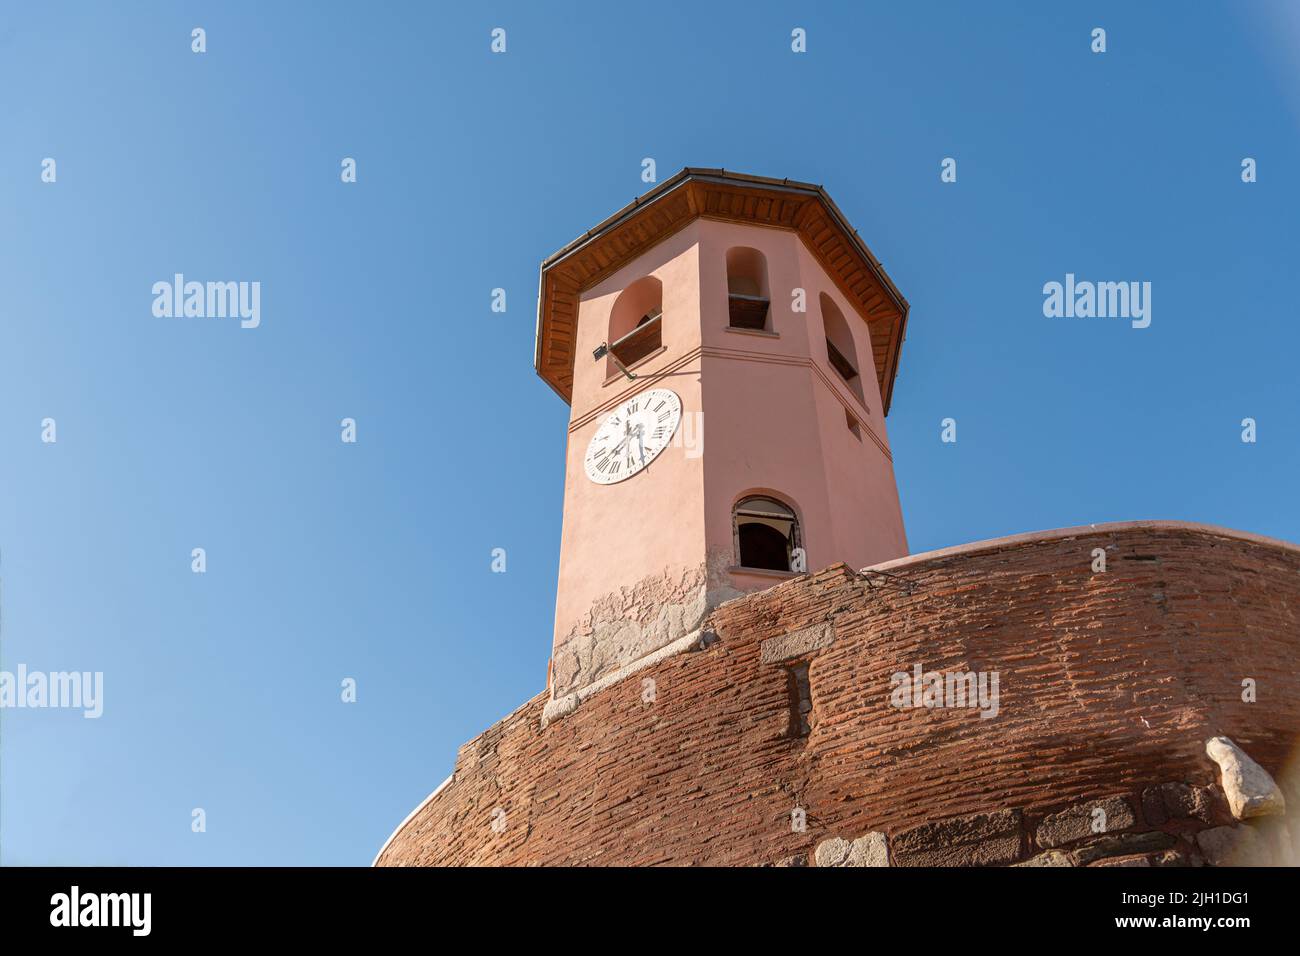 Die historische Uhr im Schloss Ankara in Ankara, der Hauptstadt der Türkei. Stockfoto